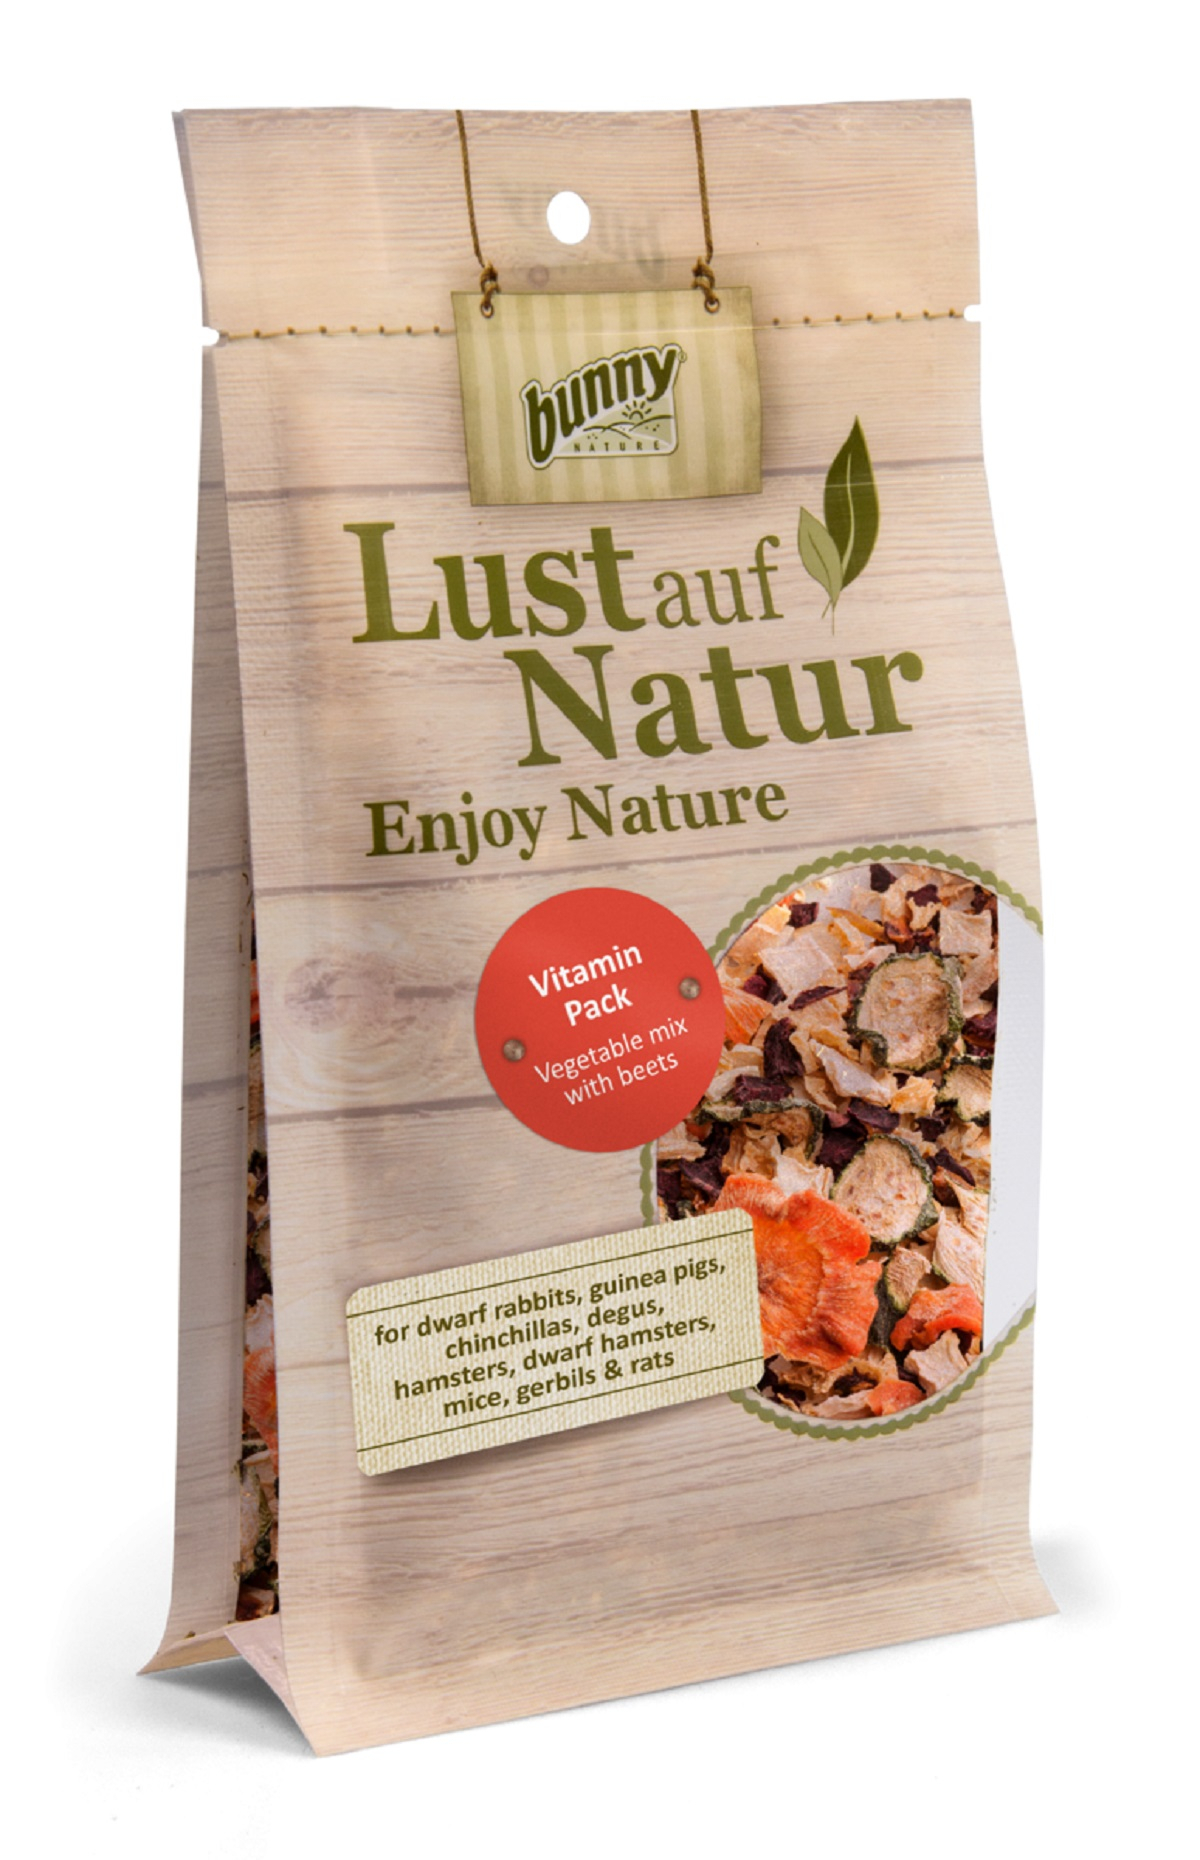 BUNNY Lust auf Natur Vitamin Pack met rode biet voor knaagdieren